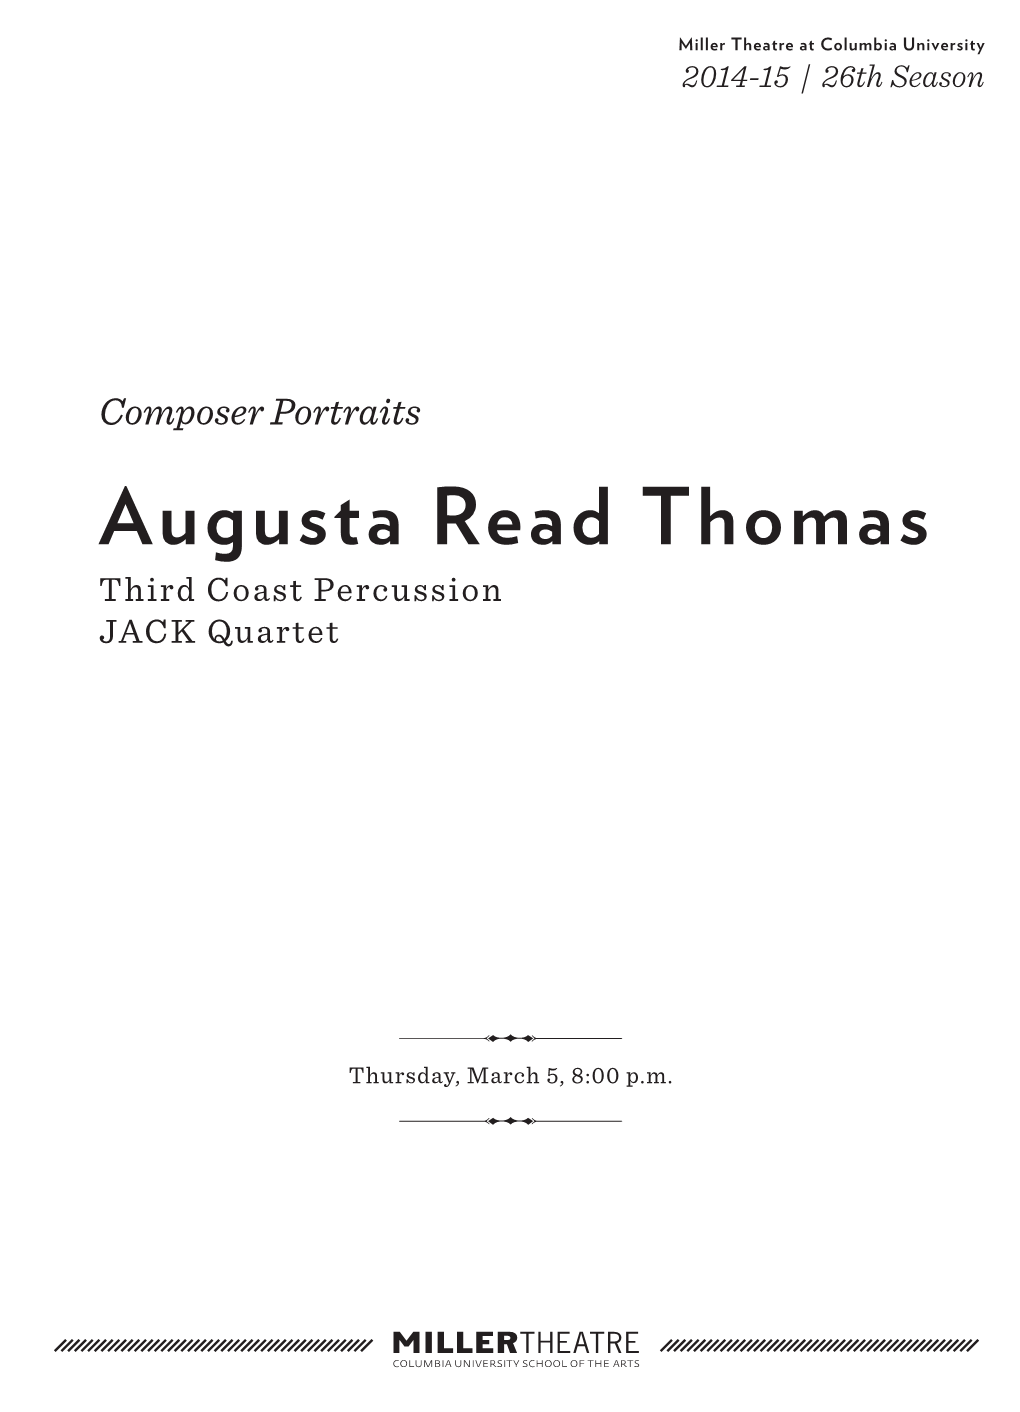 Augusta Read Thomas Third Coast Percussion JACK Quartet